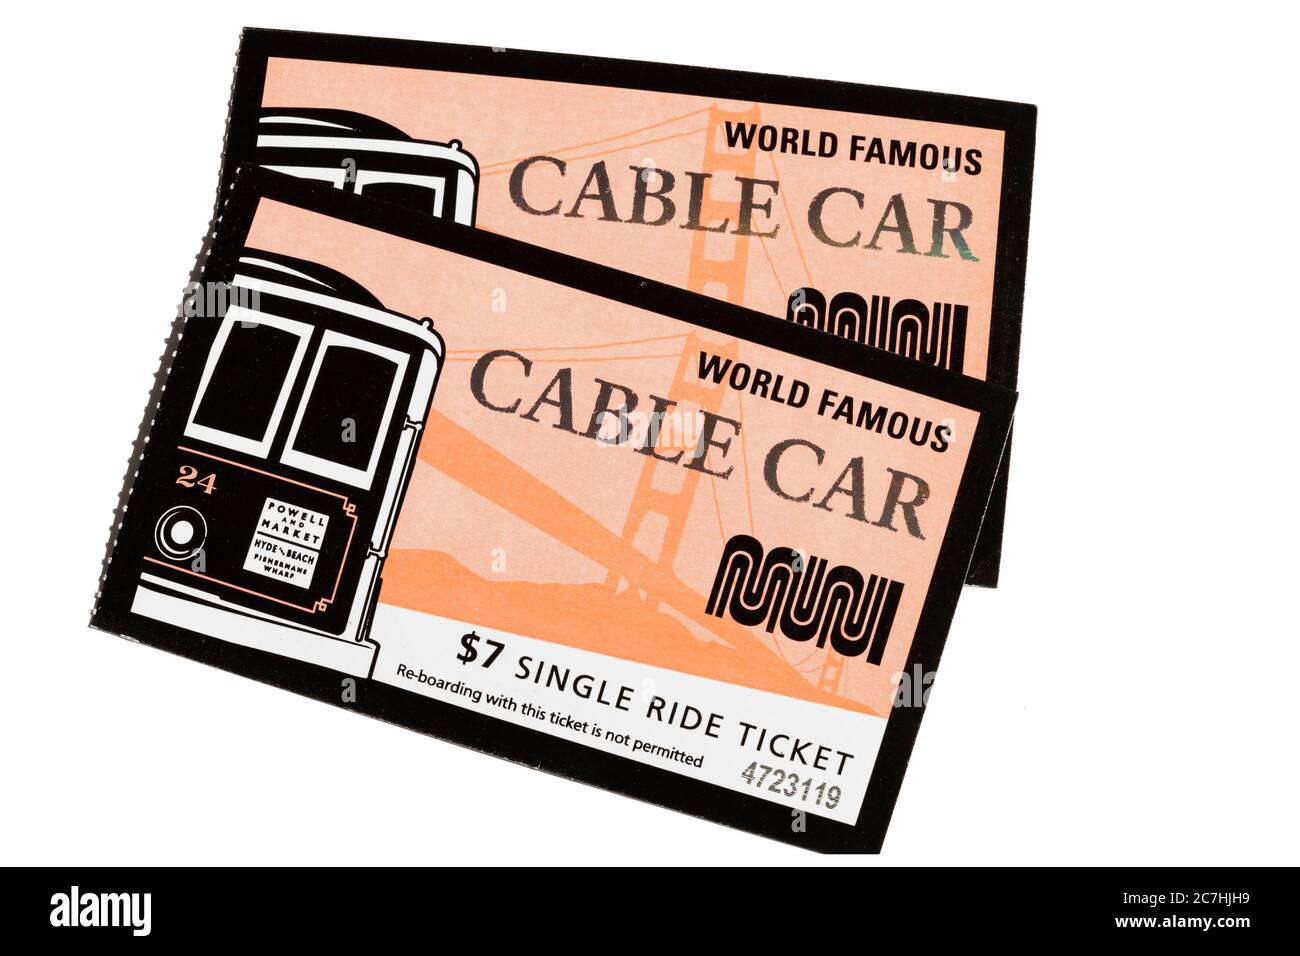 Billets pour les célèbres Cable Cars de San Francisco, Californie, États-Unis. Sur blanc, découpe. Banque D'Images